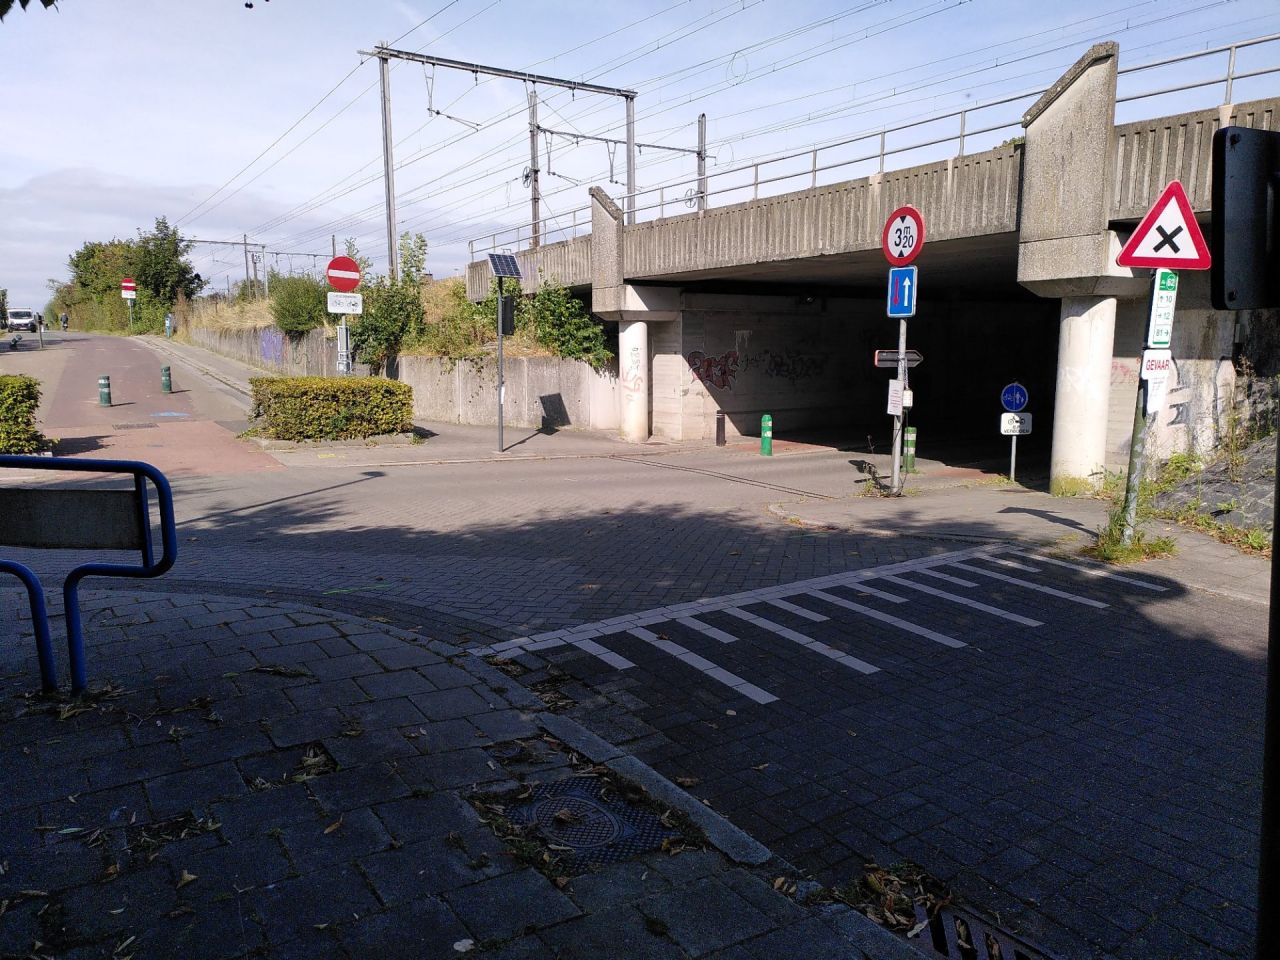 Tijdens het proefproject hebben fietsers op de fietsostrade F1 Antwerpen-Mechelen voorrang op dit kruispunt 